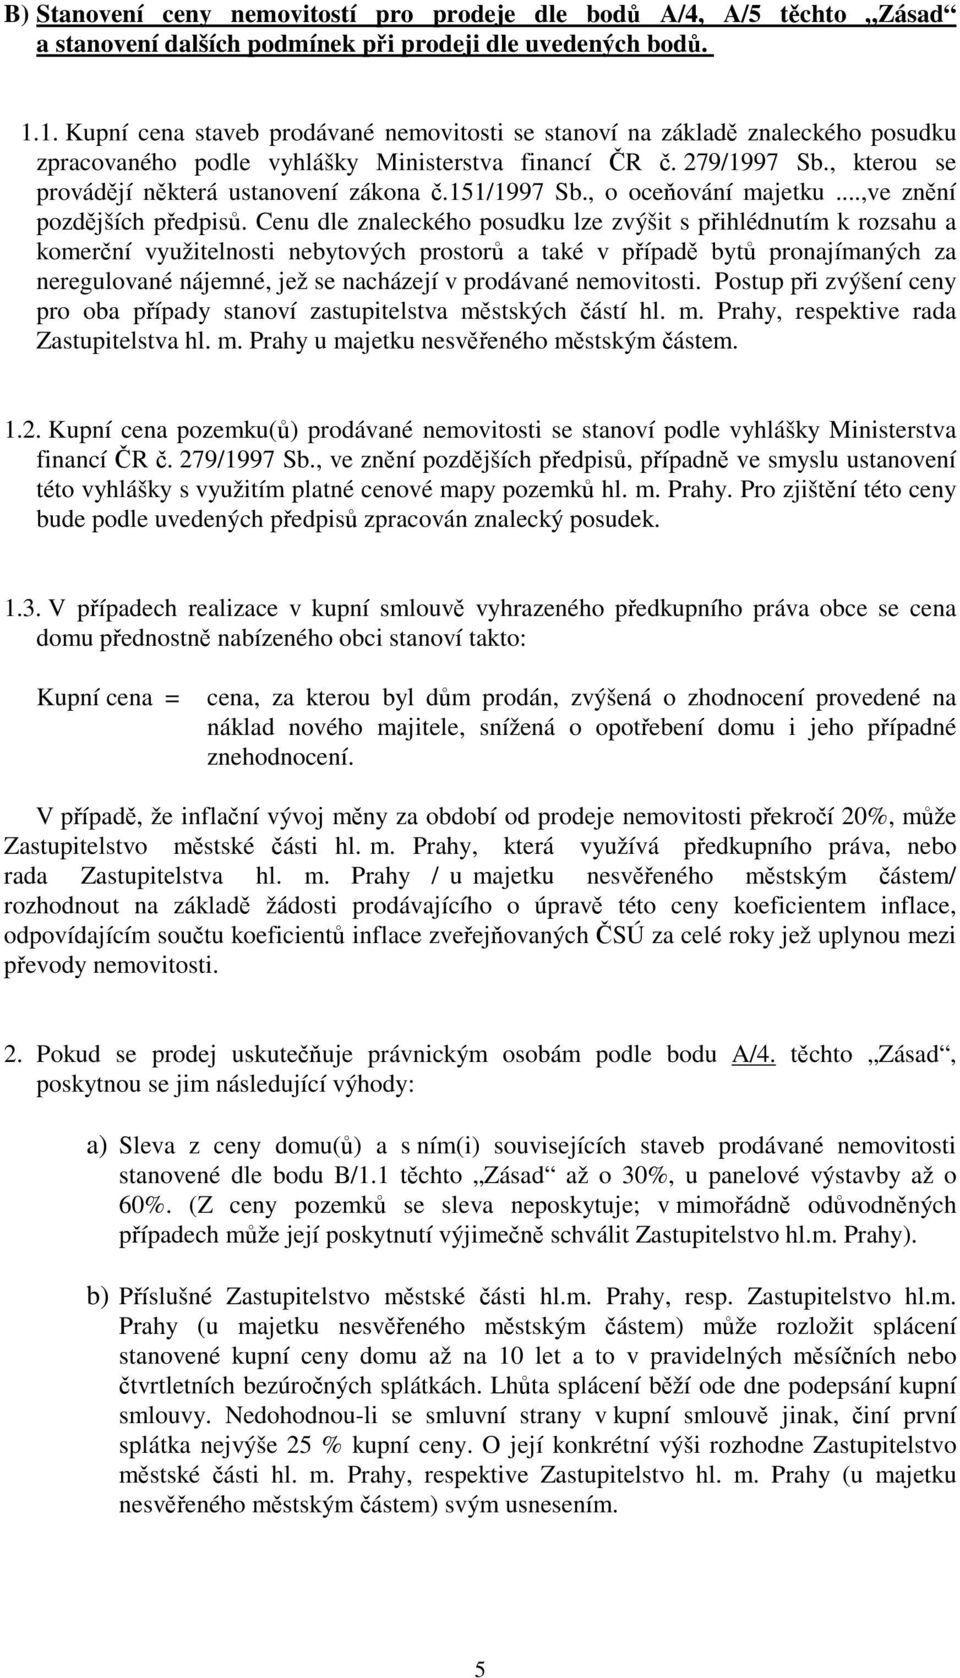 151/1997 Sb., o oceování majetku...,ve znní pozdjších pedpis.